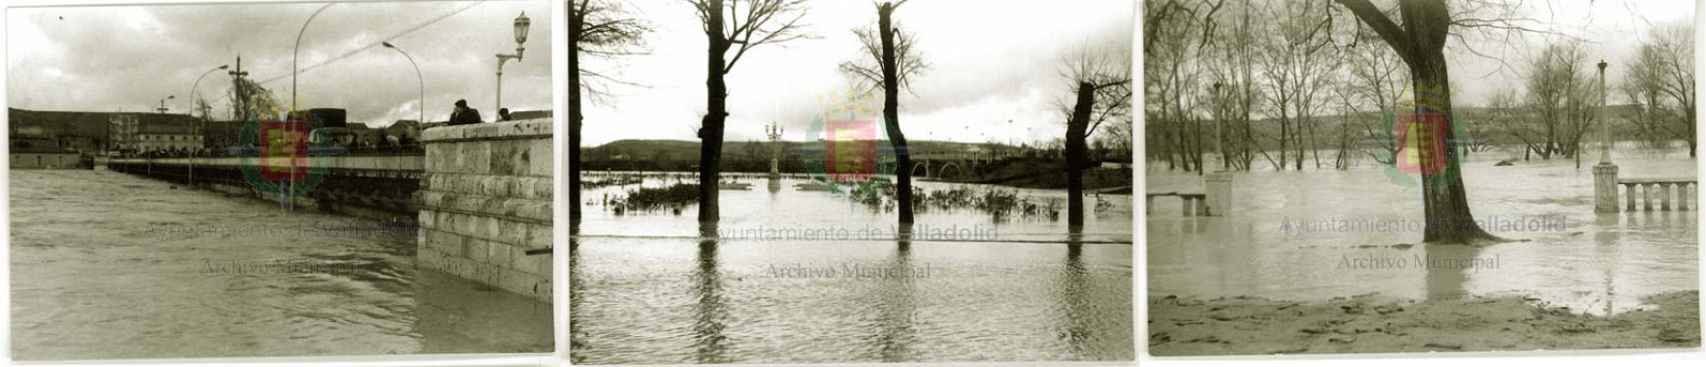 El estado de Valladolid tras la inundación